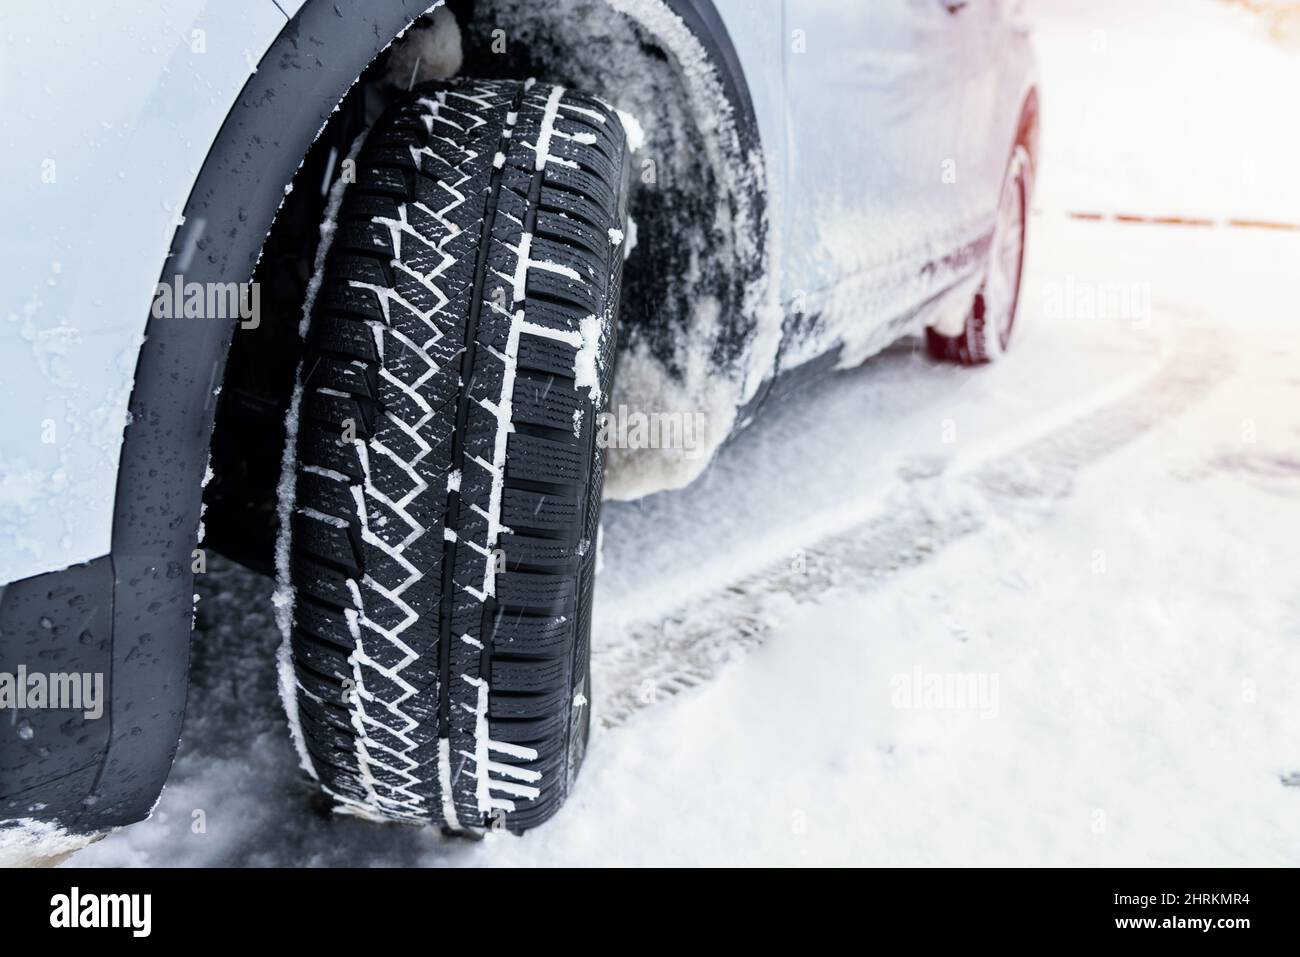 Voiture équipée de pneus neige sur une route alpine enneigée glissante pendant un blizzard Banque D'Images